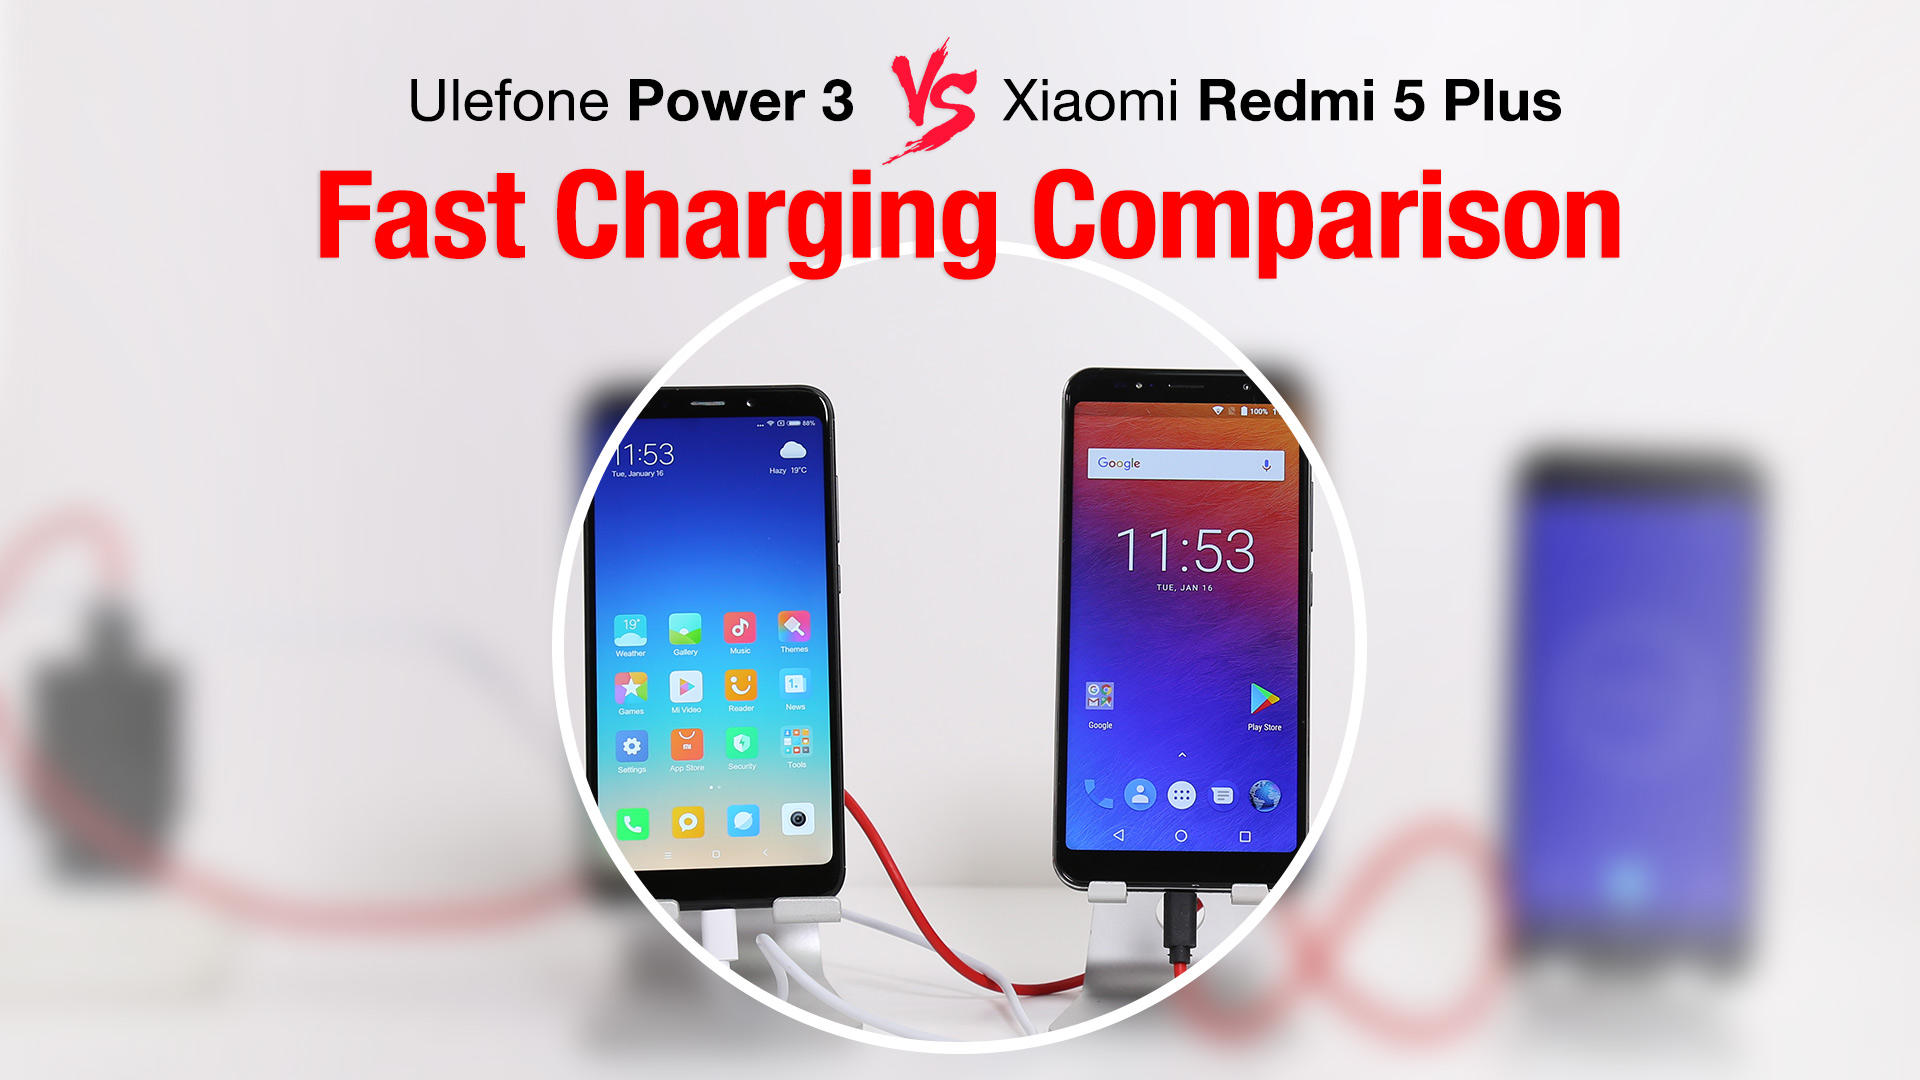 Porovnání baterií Ulefone Power 3 VS Xiaomi Redmi 5 Plus [sponzorovaný článek]